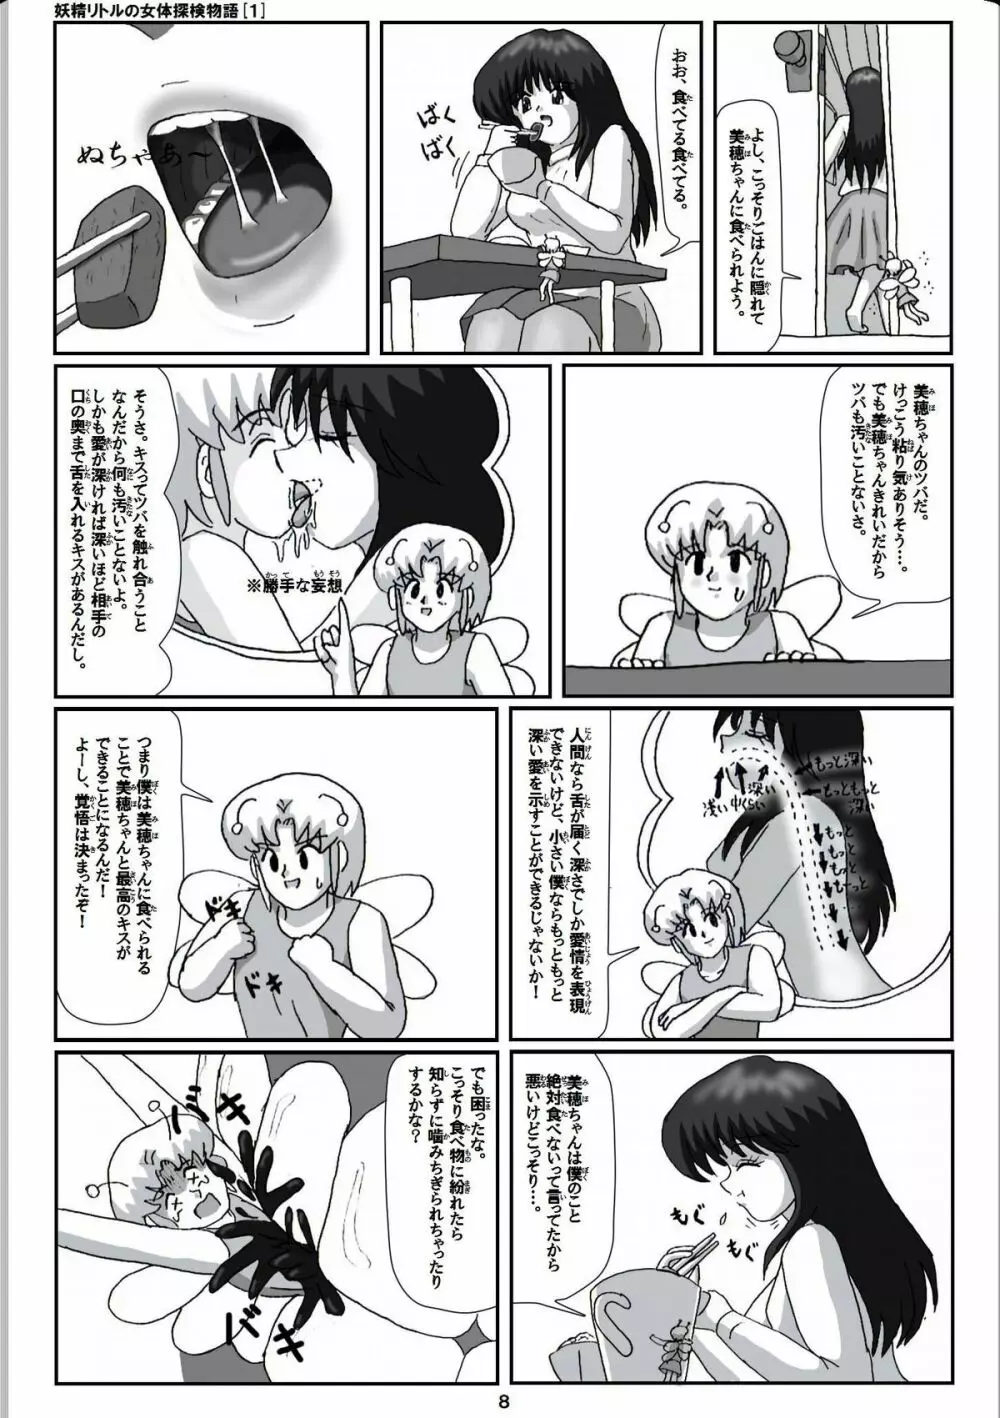 妖精リトルの女体探検物語 1 8ページ